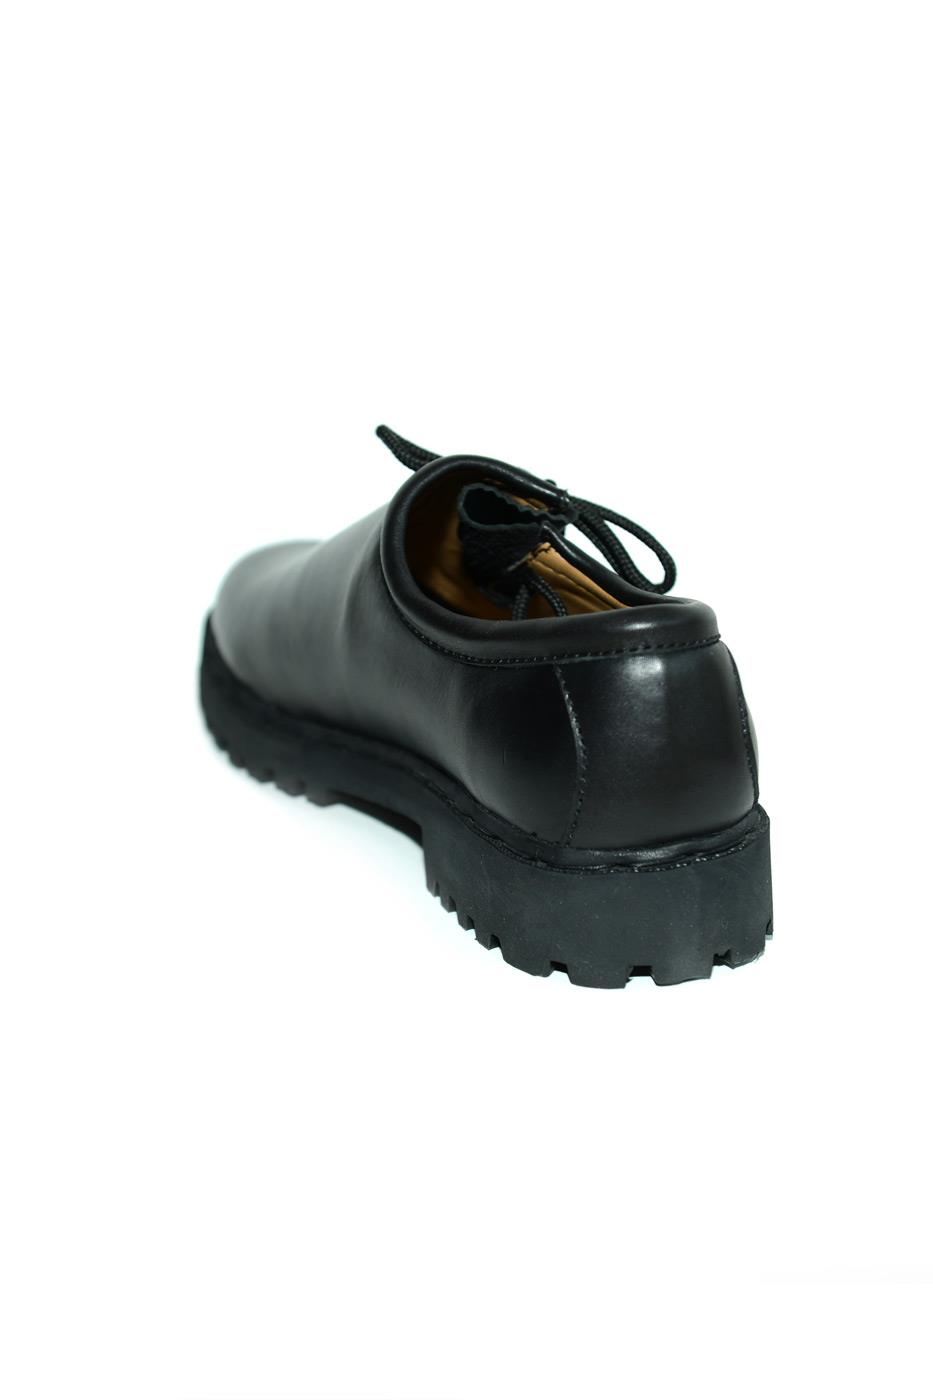 Schuhe schwarz Glattleder